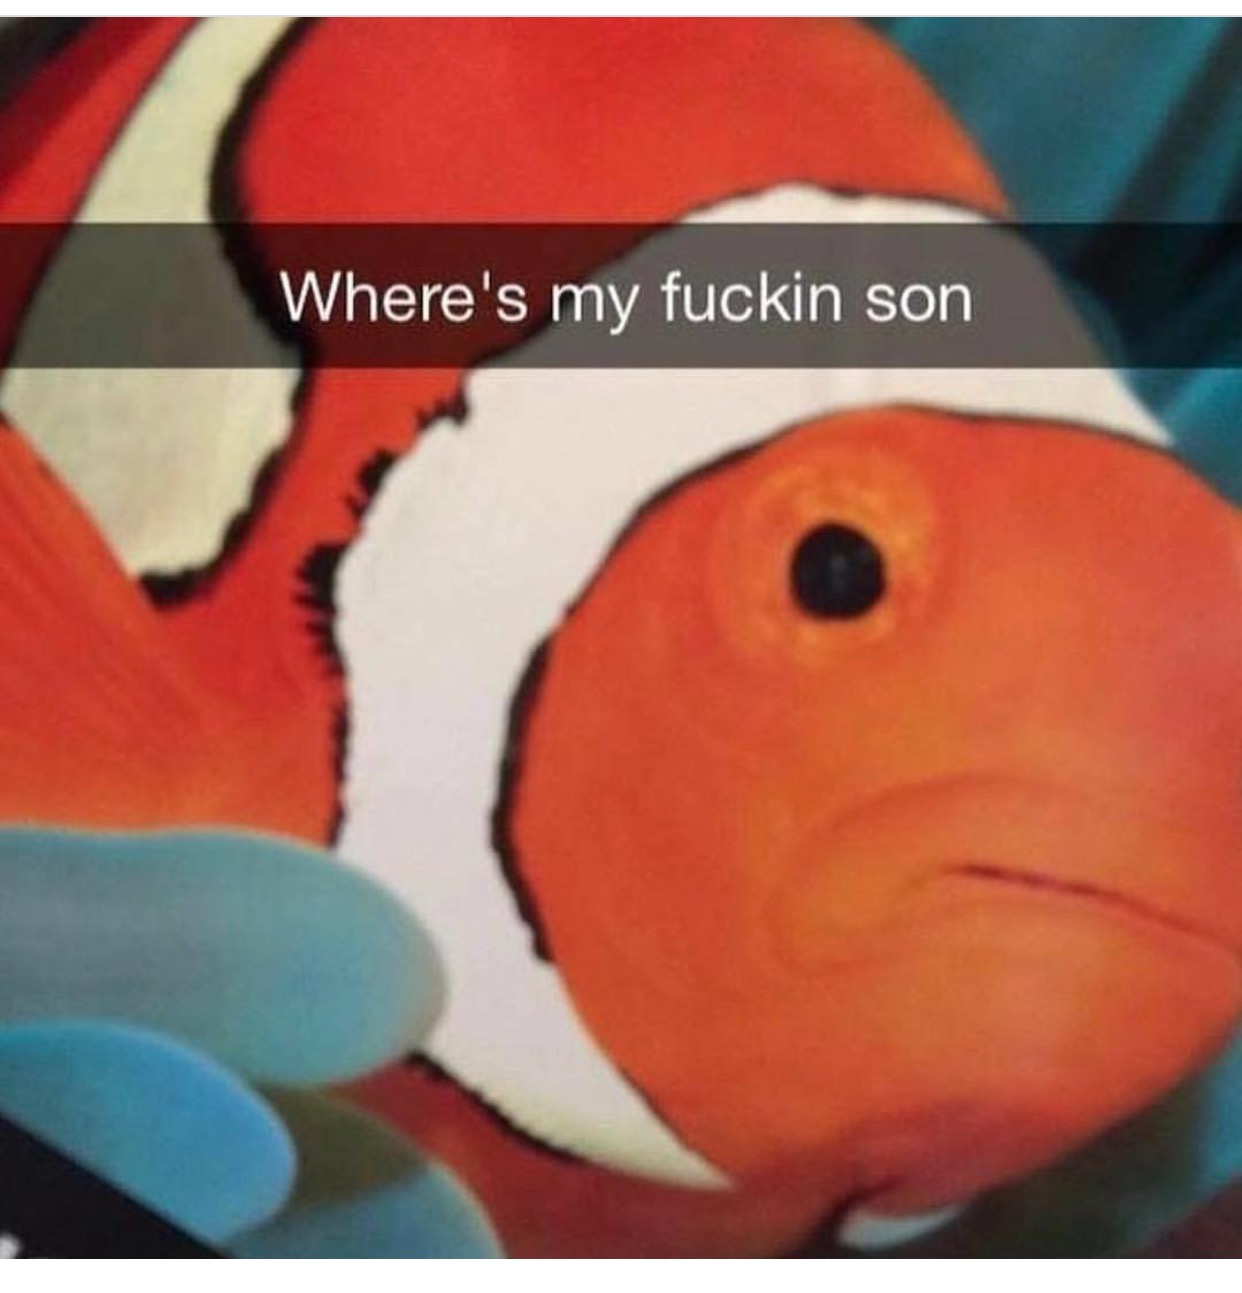 memes - where's my fuckin son - Where's my fuckin son